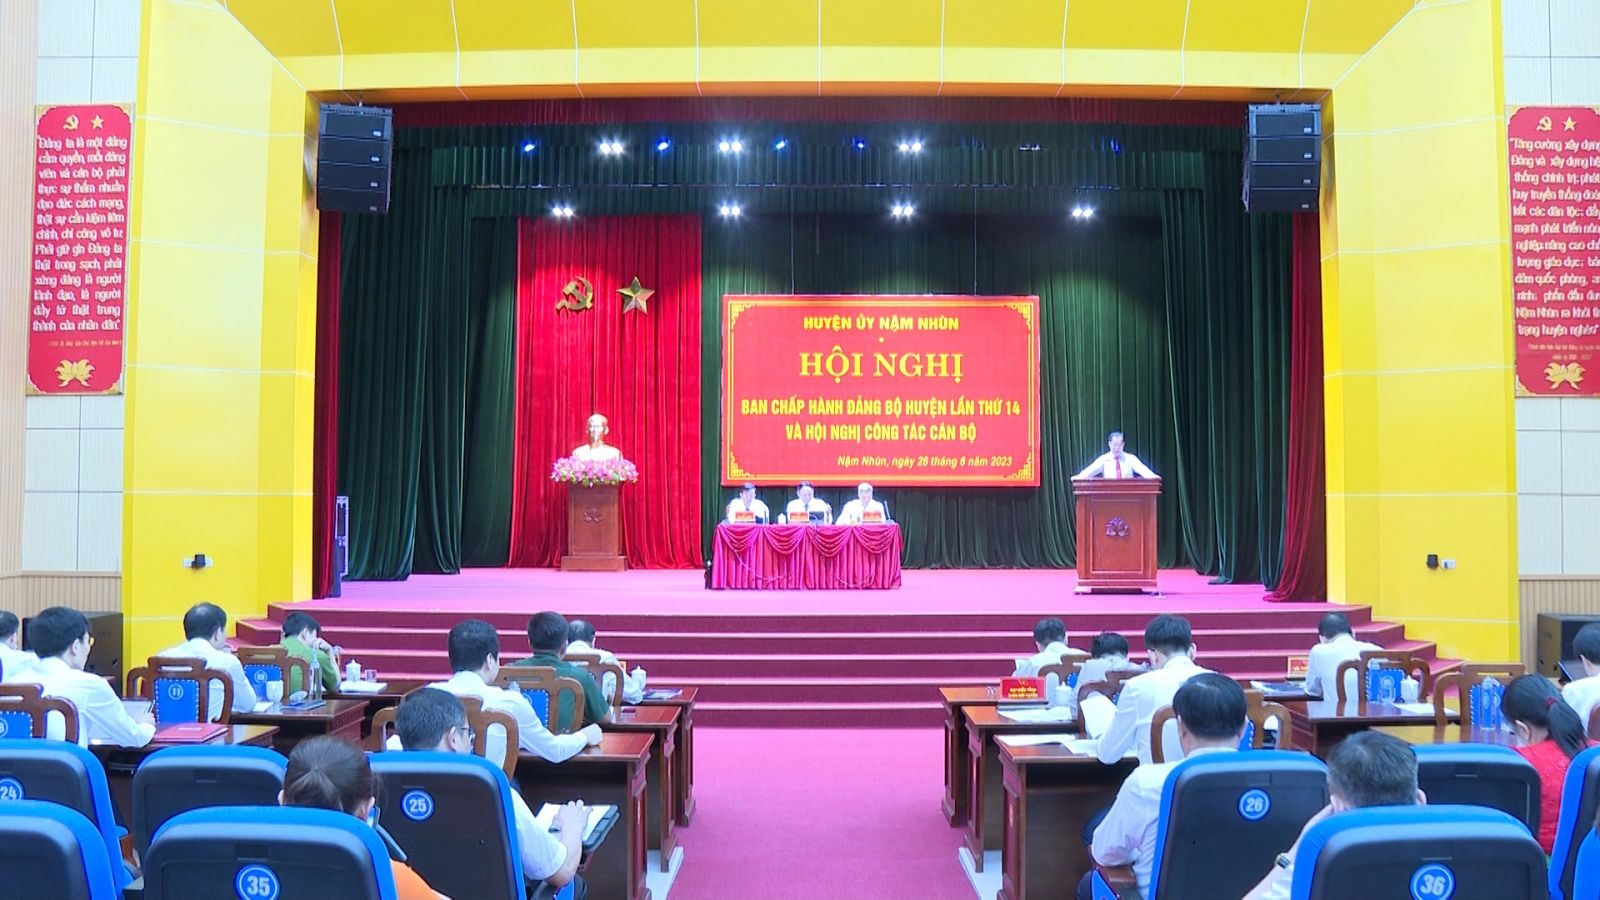 Hệ thống âm thanh Trung tâm Hội nghị - Văn hóa huyện Nậm Nhùn, tỉnh Lai Châu